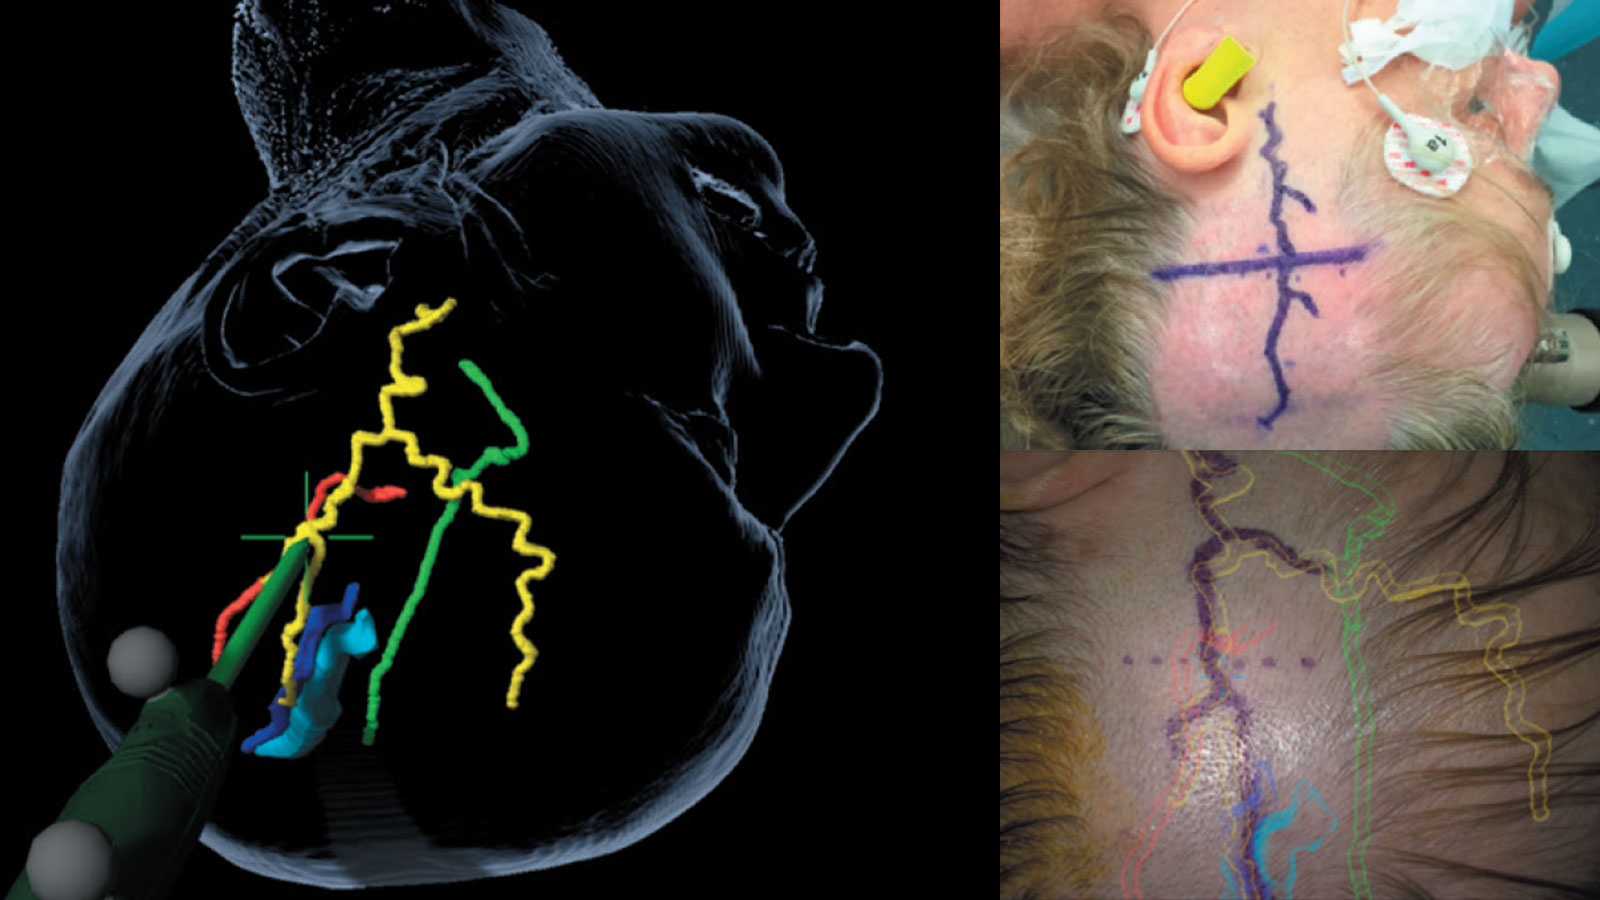 ​Abbildung zur Augmented Reality. Links Computerberechnung der Arterie, rechts oben Arterie auf Kopfhaut eingezeichnet, rechts unten Navigationsdaten auf Kopf projiziert.